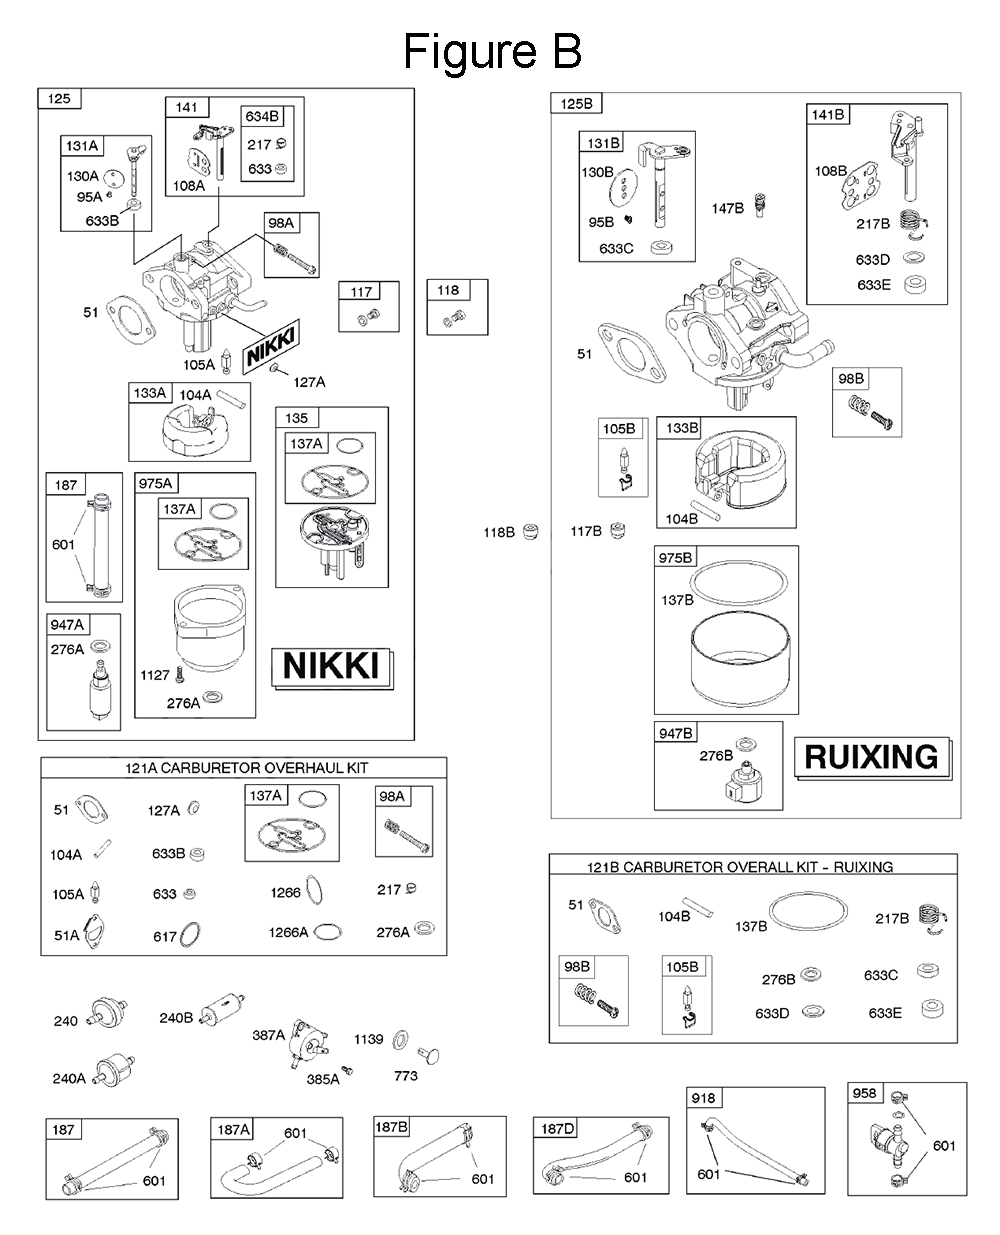 31R6-(07-0005-G1)-BriggsandStratton-PB-2Break Down